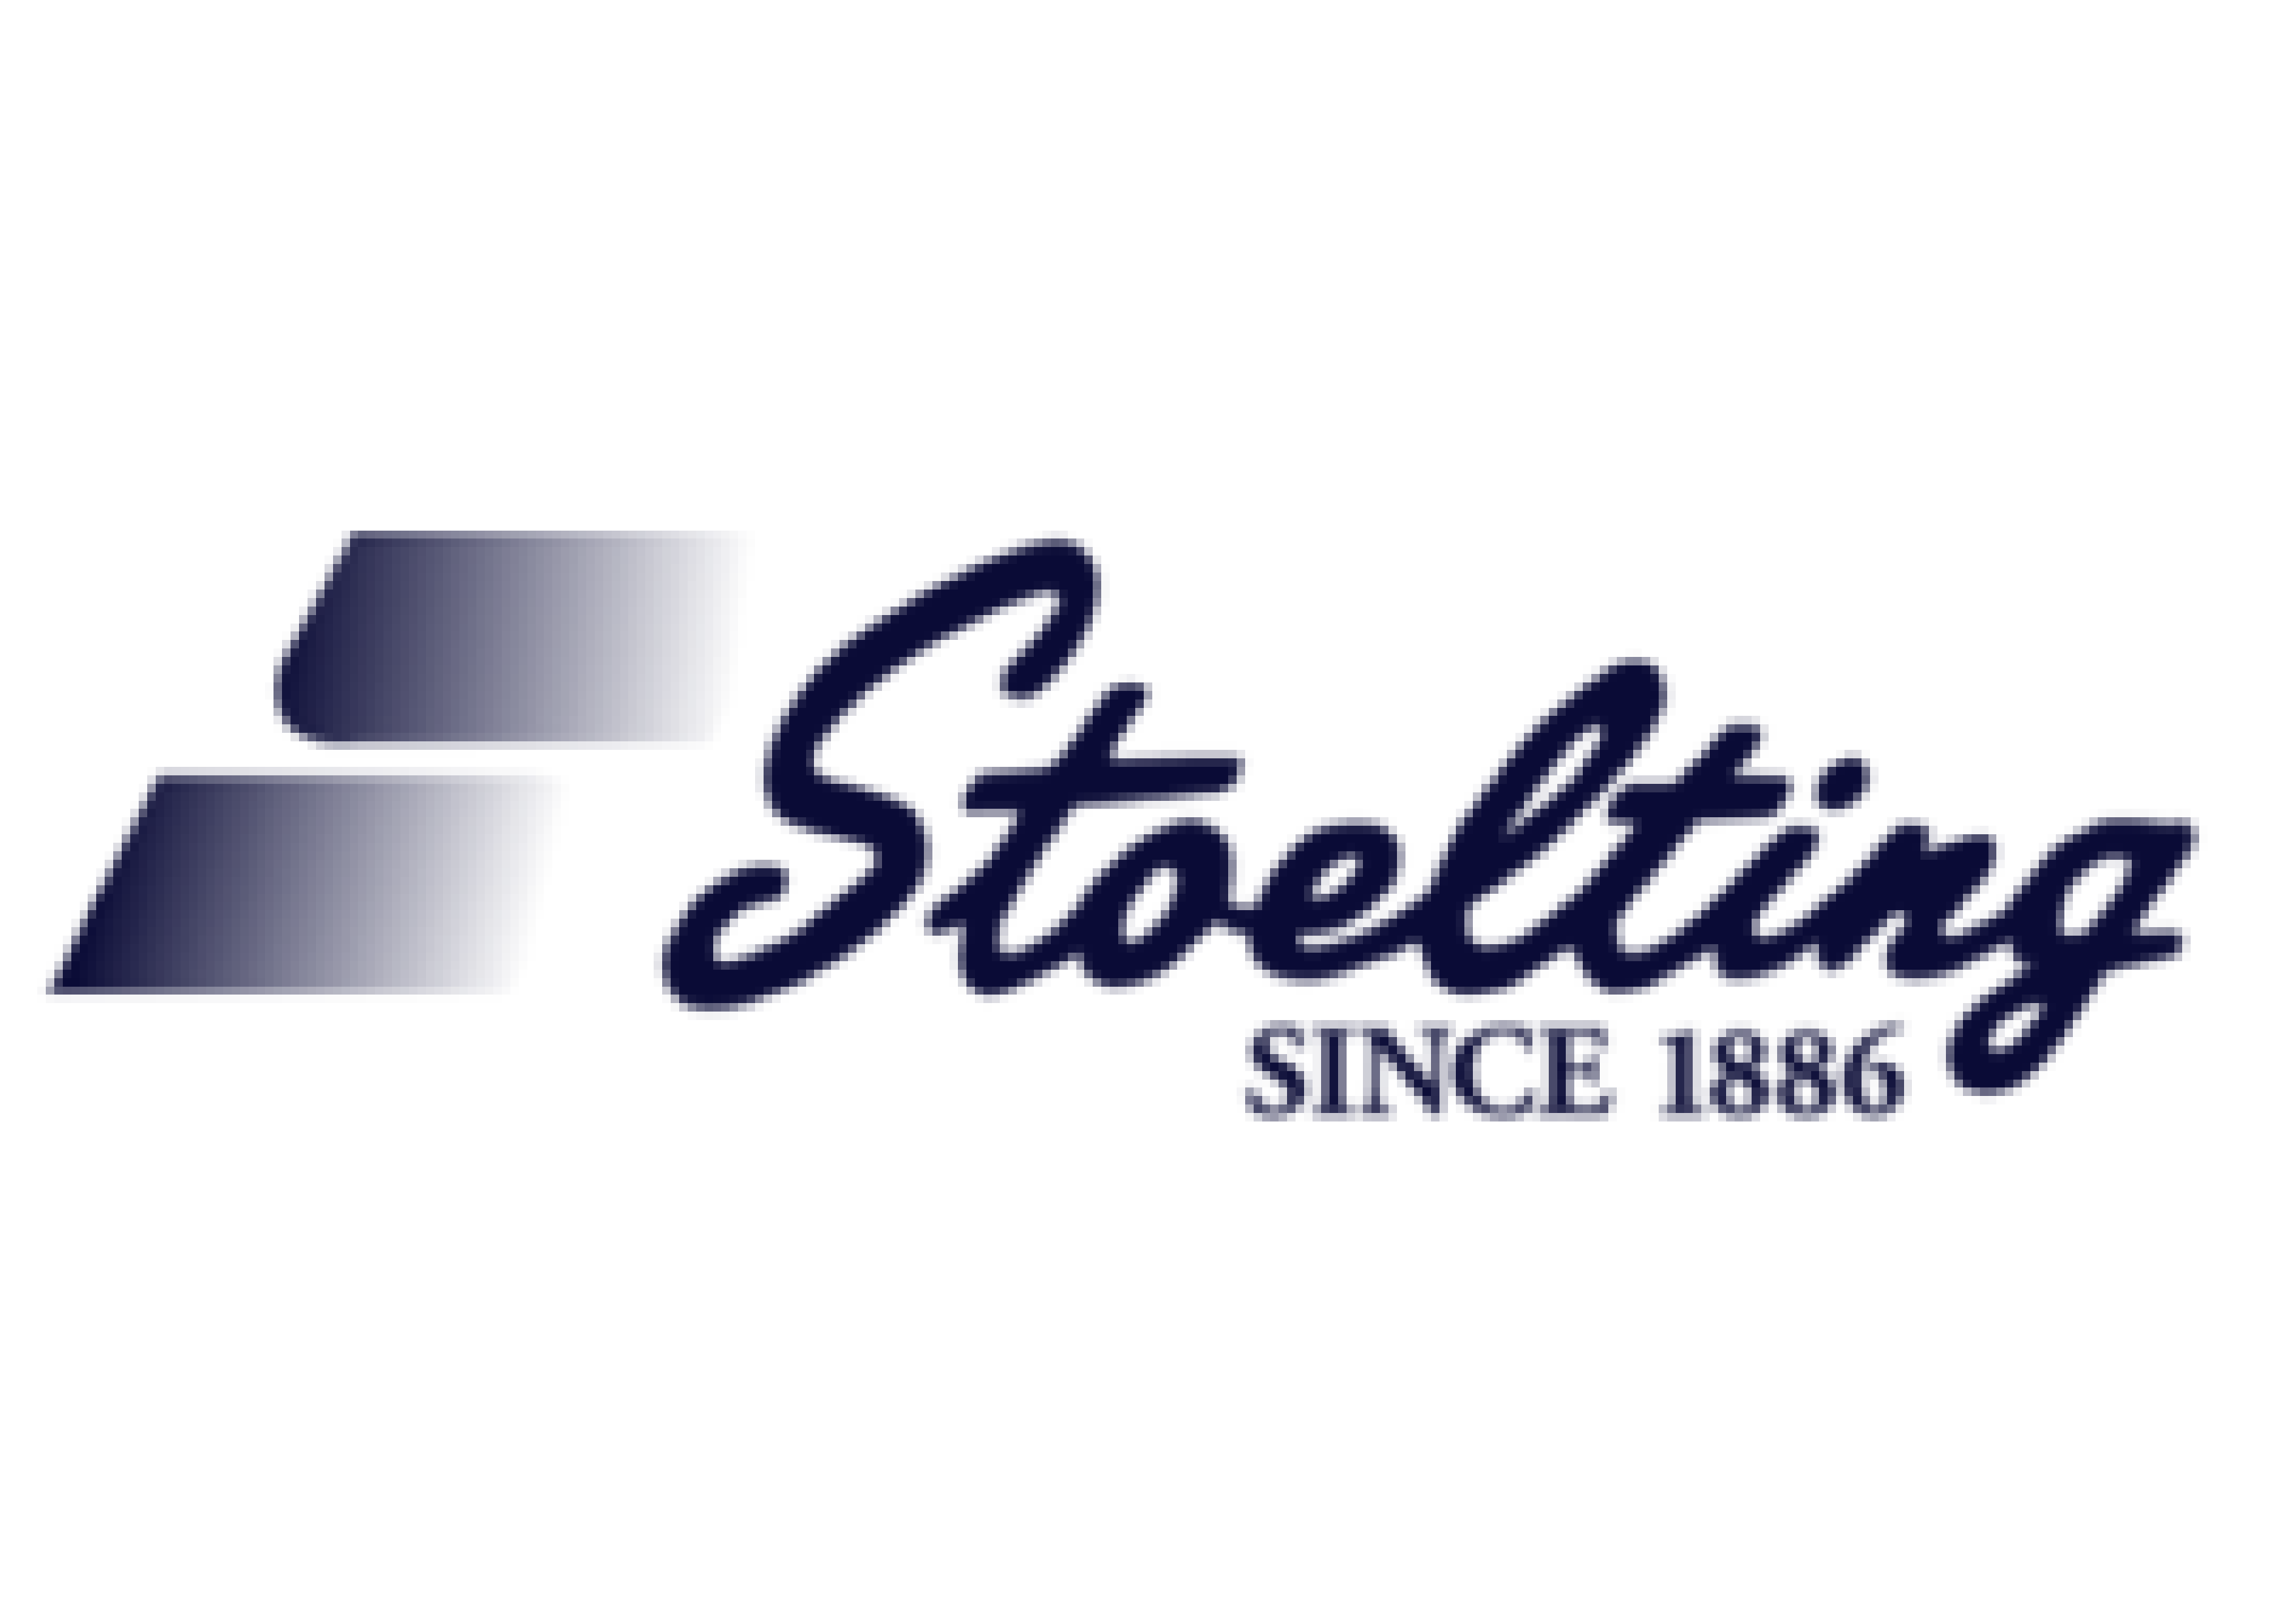 Stoelting_Logo_png2x@2x_Prancheta 1 cópia